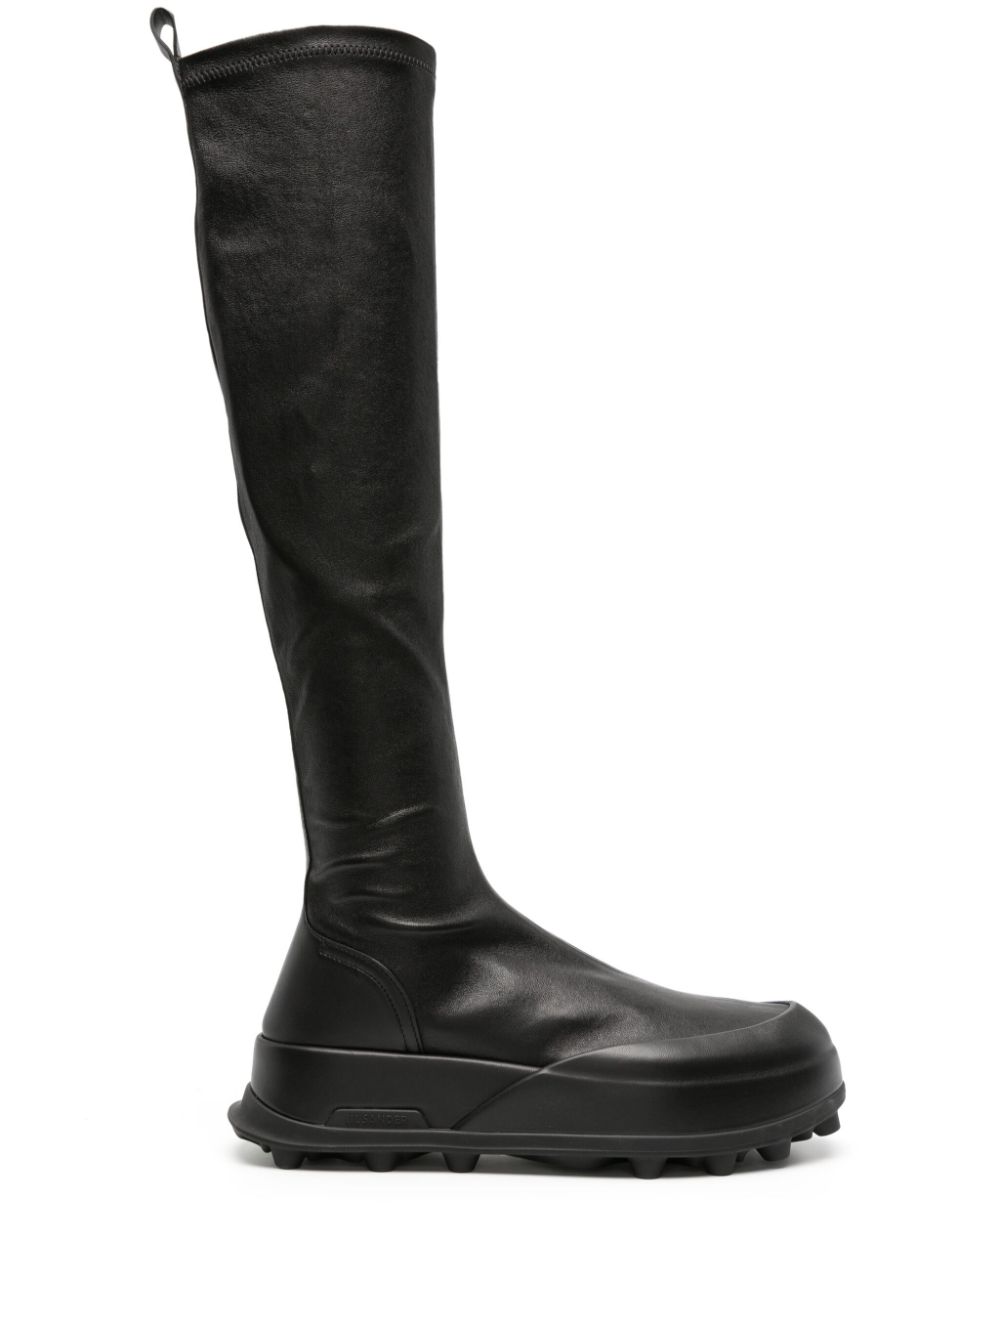 Jil Sander knee-high leather boots - Black von Jil Sander